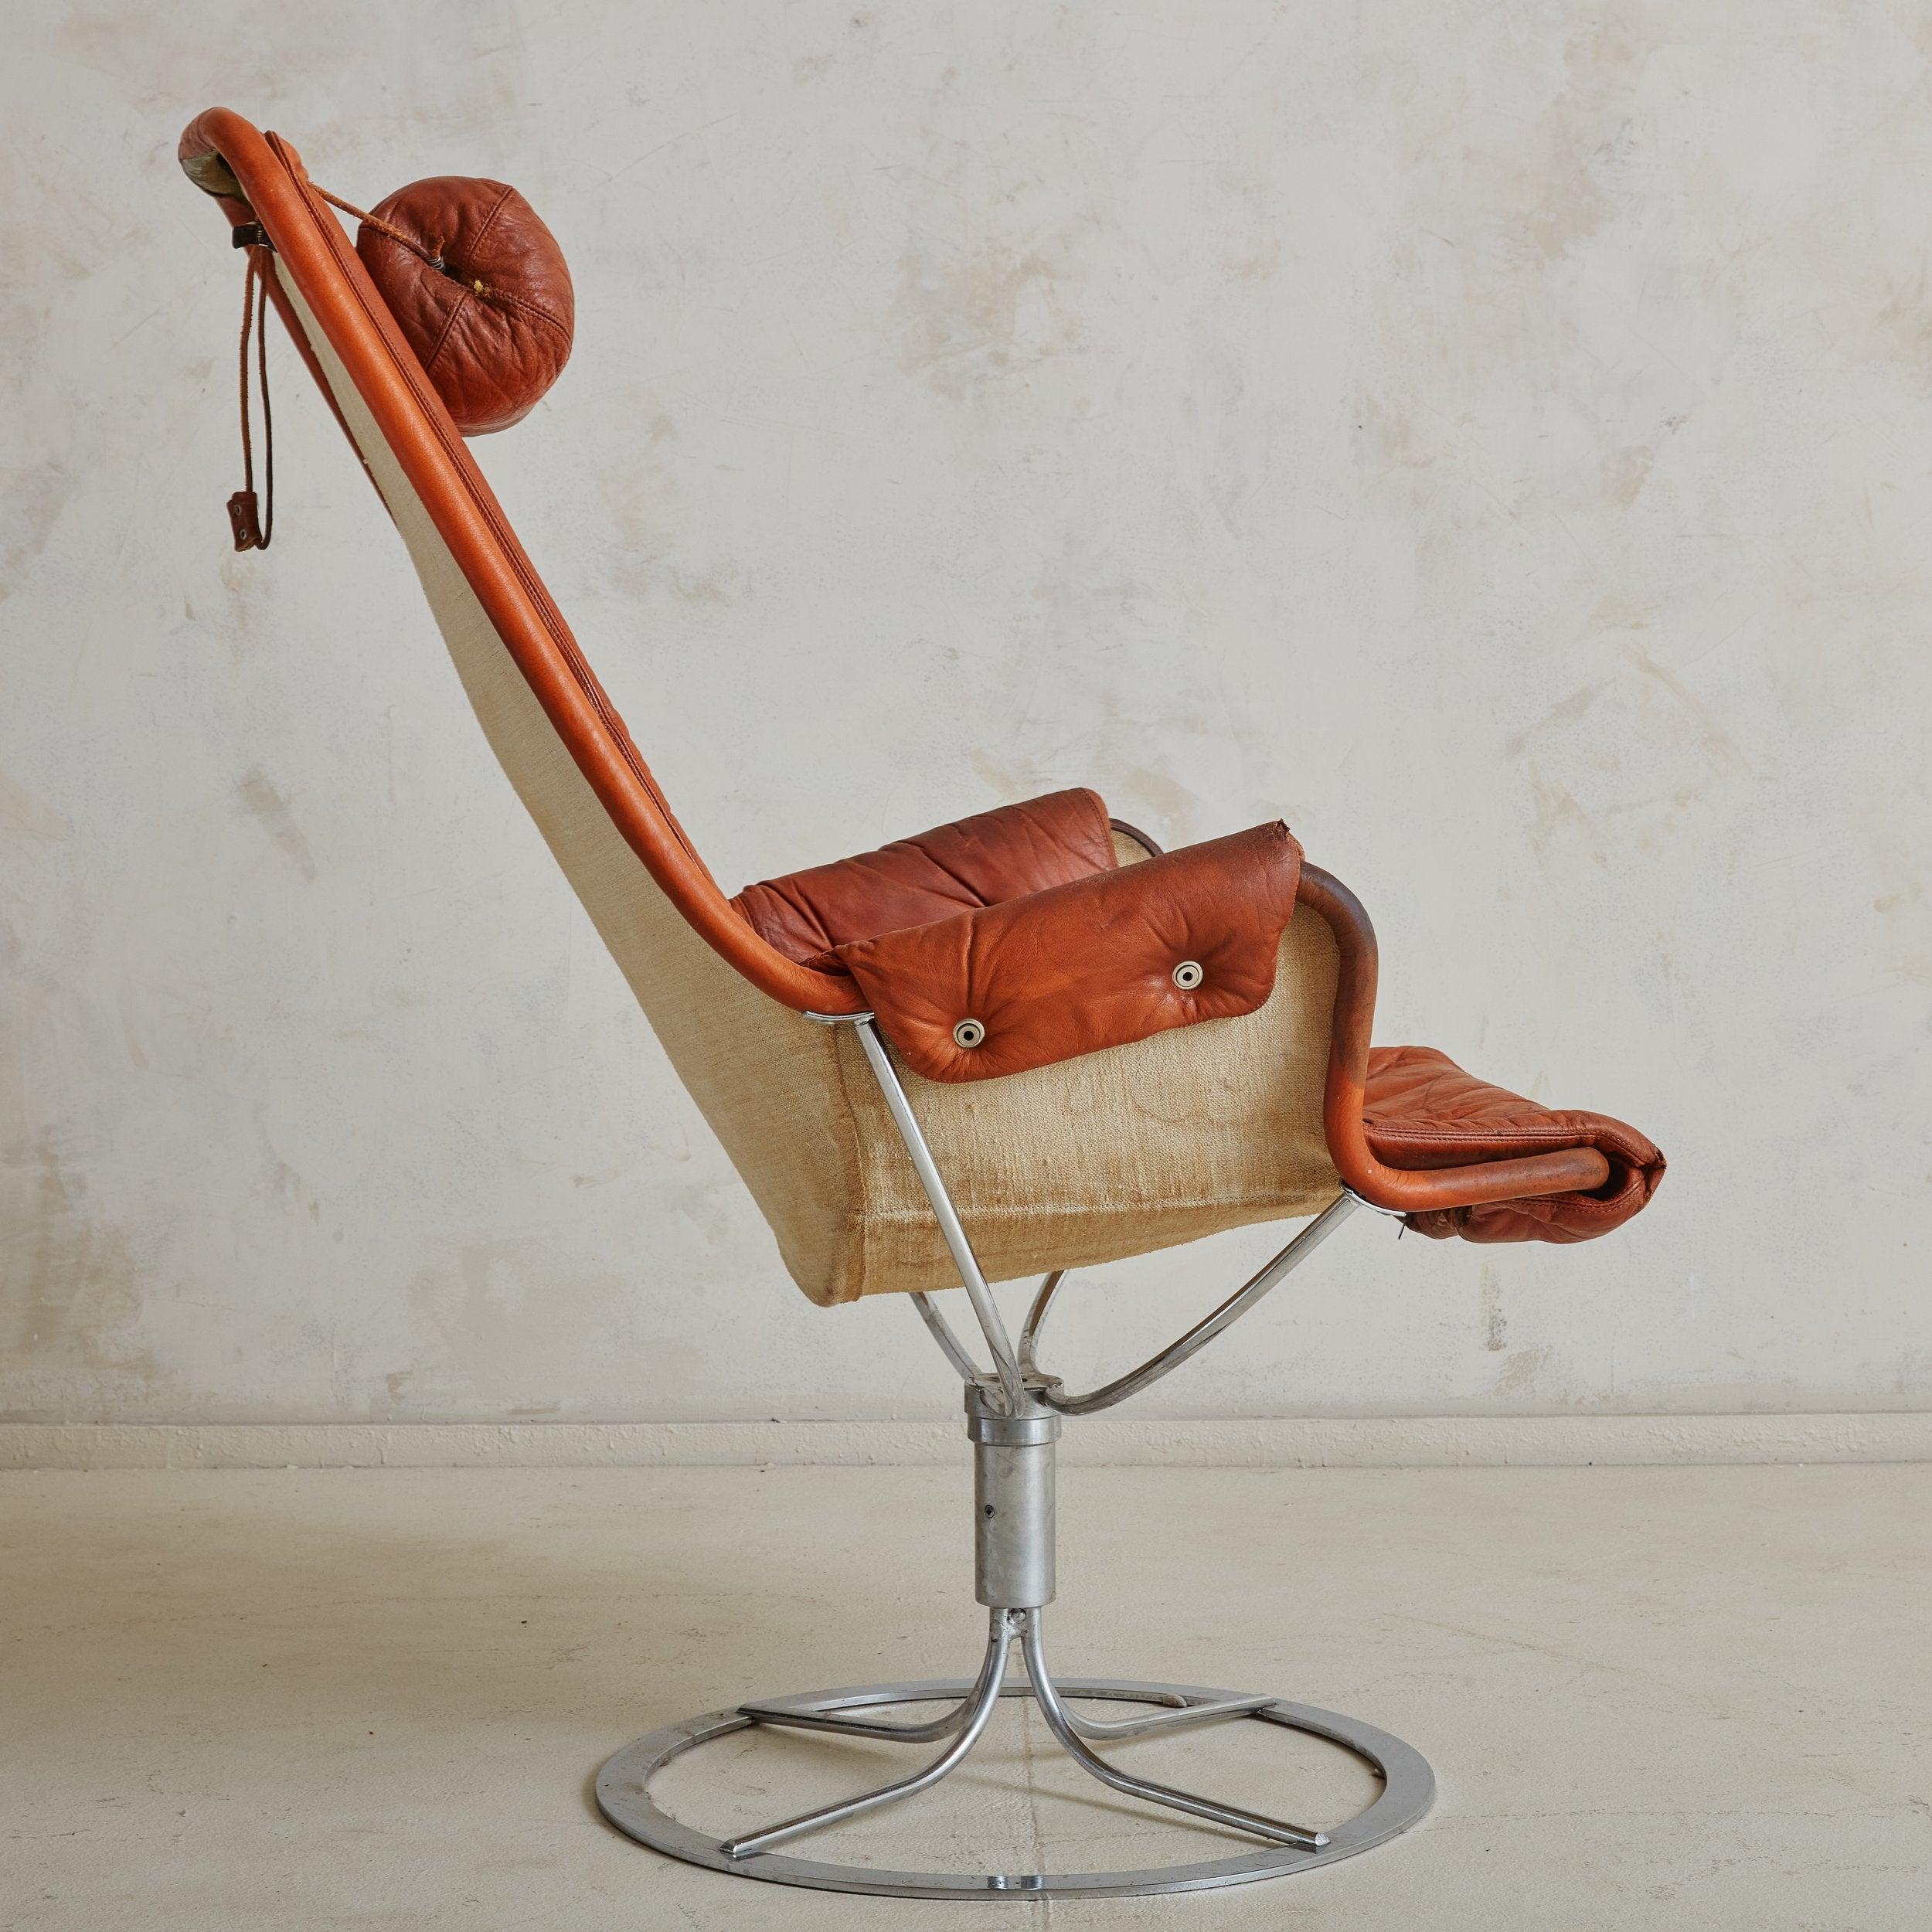 Fauteuil de salon pivotant en chrome et en cuir de l'ère Space AGE, créé par Bruno Mathsson pour DUX dans les années 1970. Reposant sur un socle rond chromé, l'assise en bandoulière élégamment incurvée est dotée d'un revêtement en cuir orange brûlé